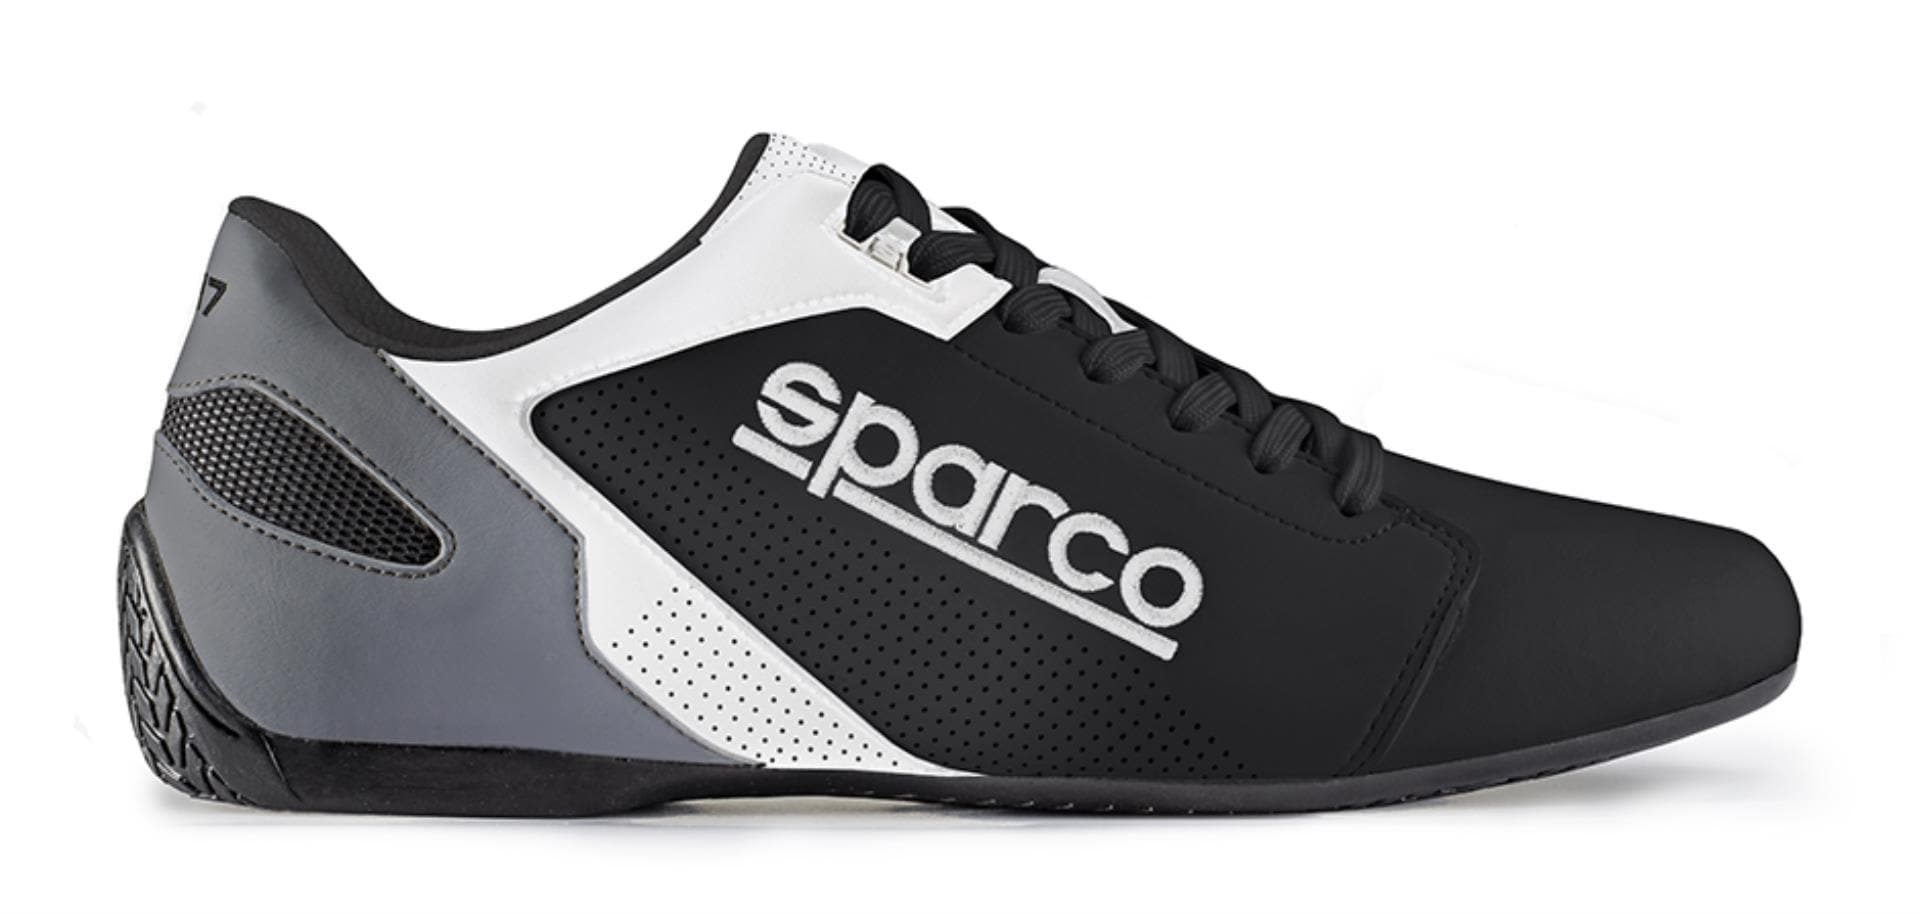 Kengät Sparco SL-17 musta/valkoinen